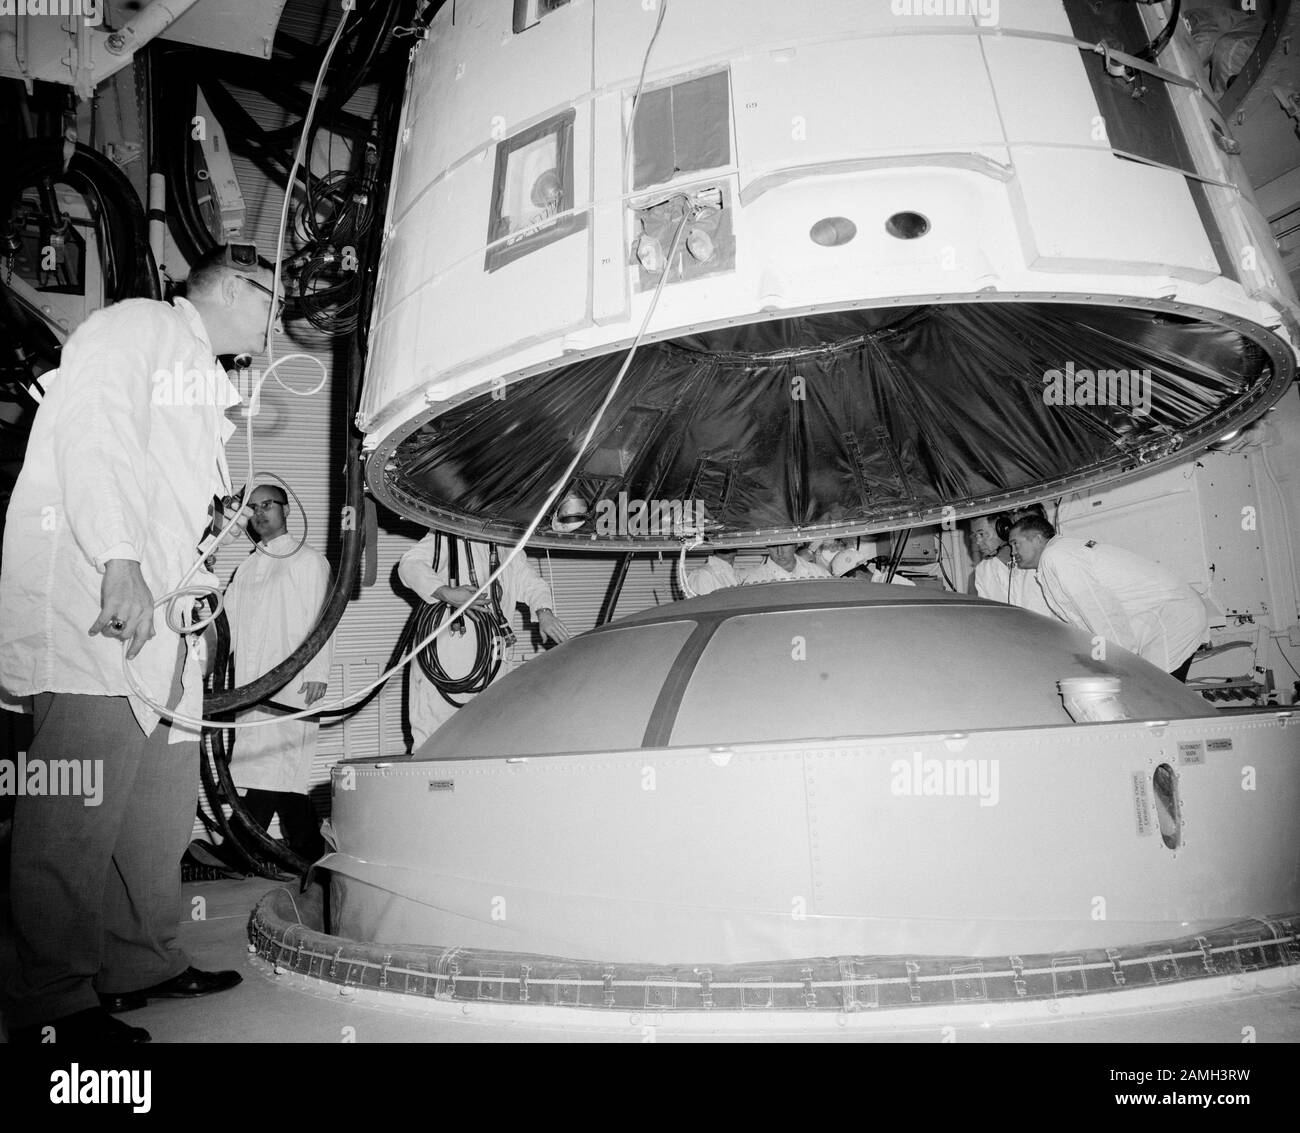 L'engin spatial Gemini III étant connecté au véhicule de lancement Titan II dans la salle blanche du Pad 19 au Kennedy Space Center, Merritt Island, Floride, États-Unis, février 1965. Image de courtoisie NASA. () Banque D'Images